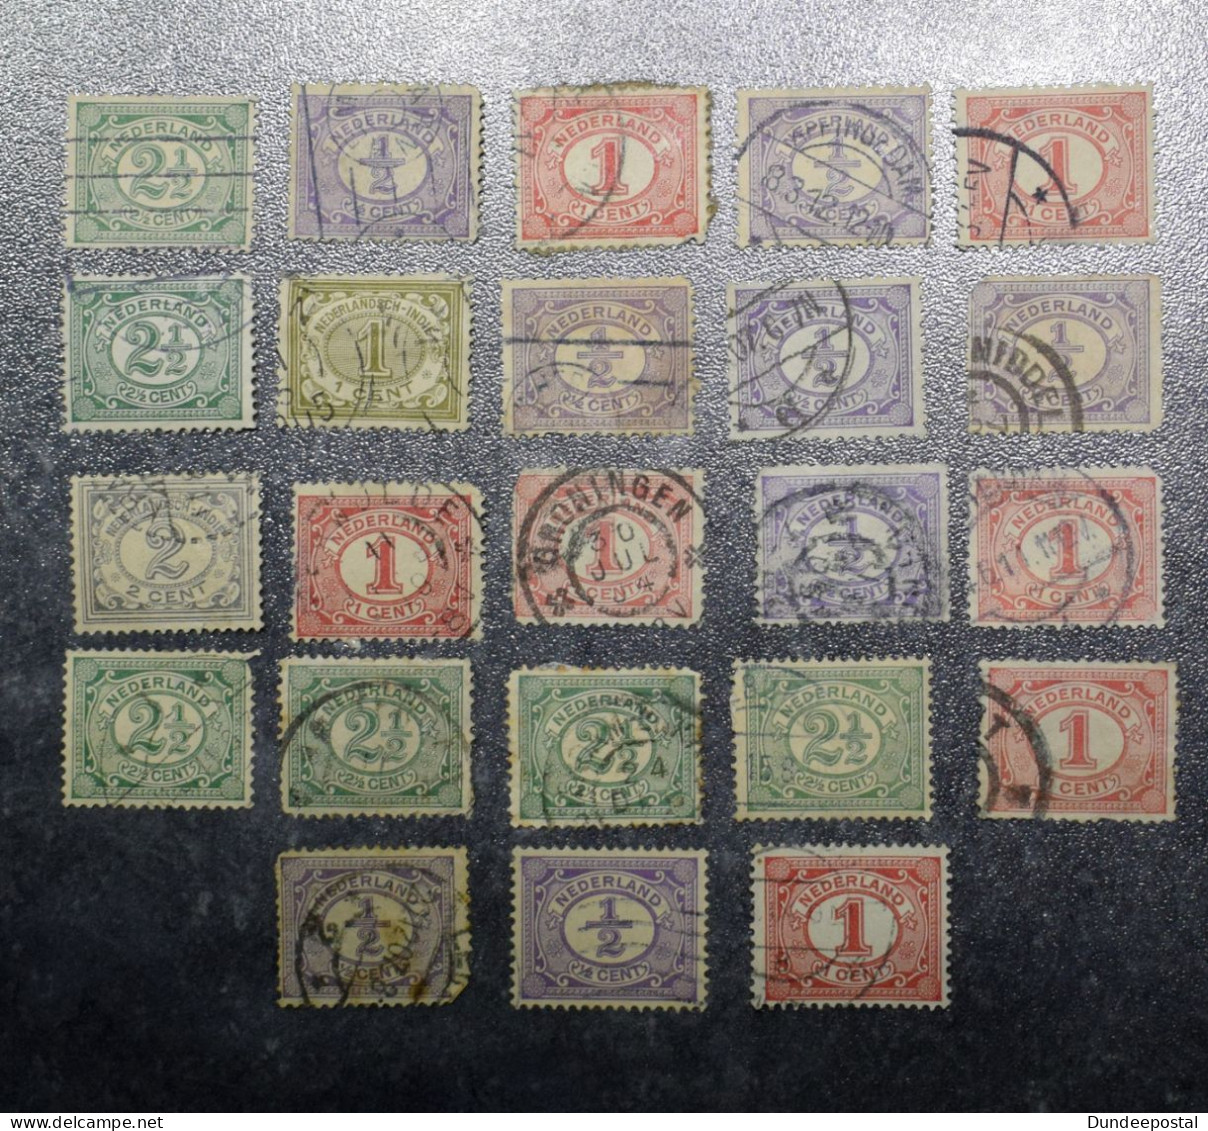 NEDERLAND  Netherlands  STAMPS   Qnew Daily Stamps 1/2  1   2 1/2  1899       ~~L@@K~~ - Gebruikt